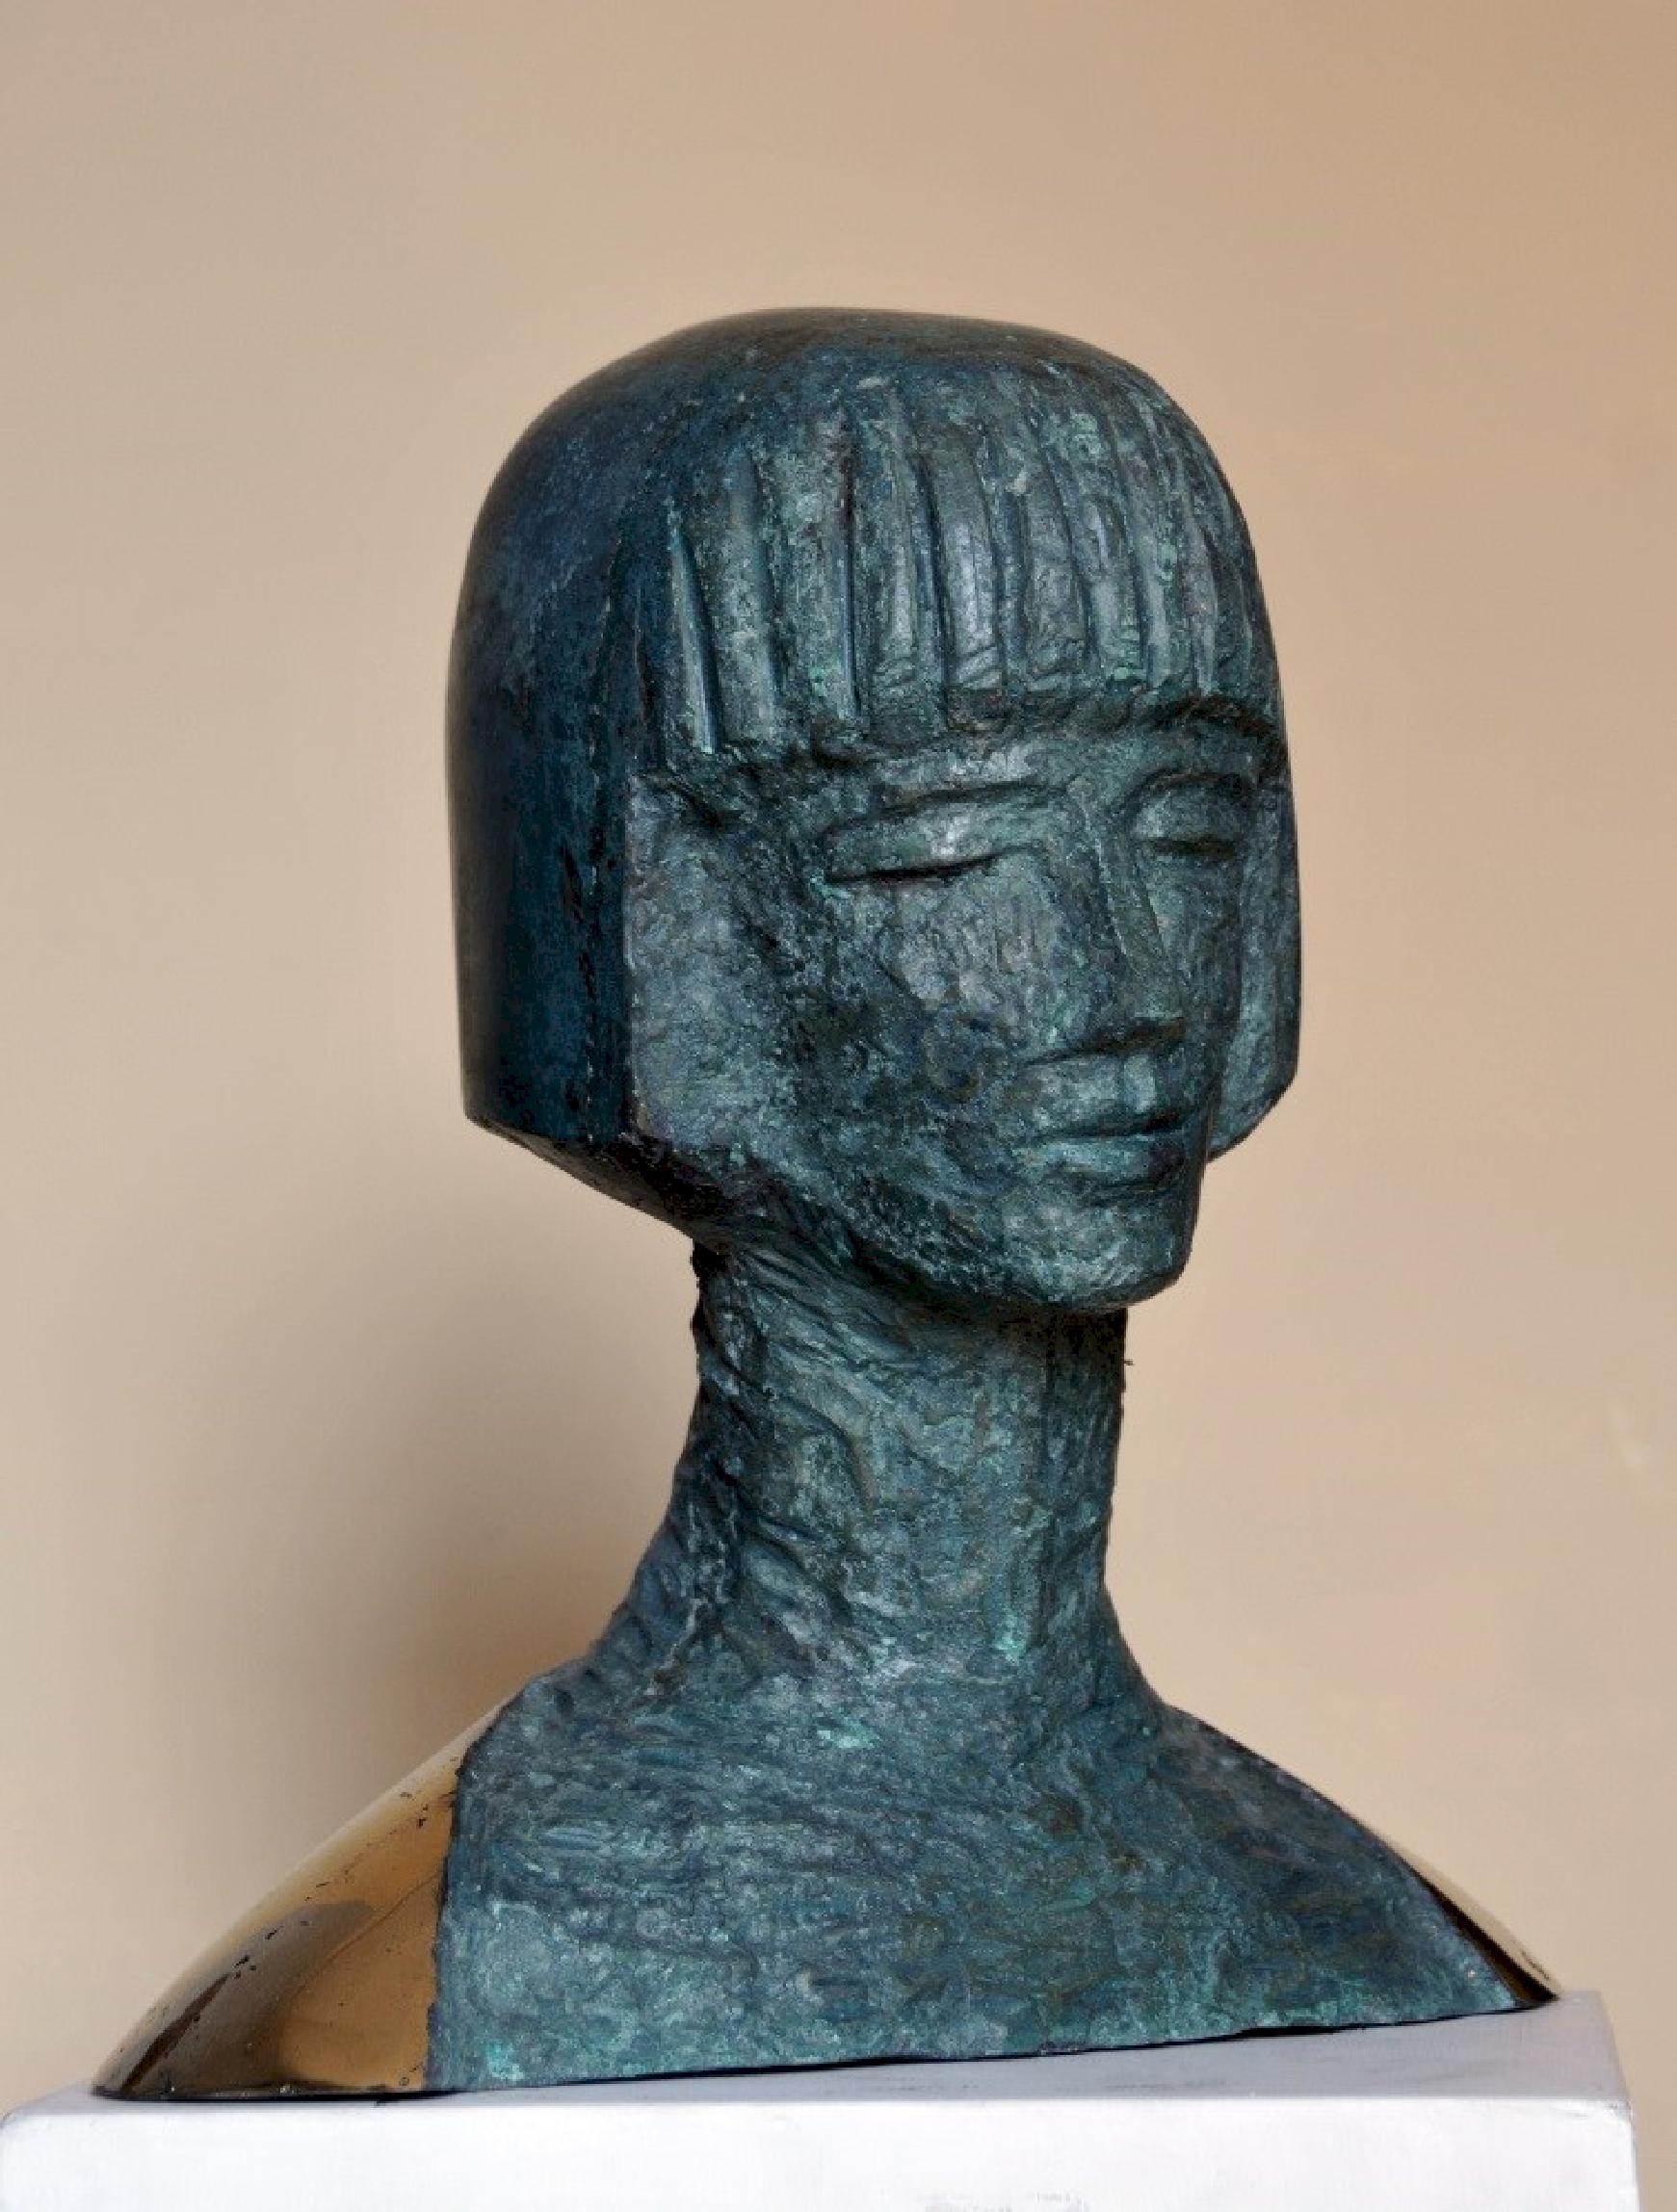 „Patty“ Bronzeskulptur 17" x 17" x 9" Zoll von Sarkis Tossonian

Sarkis Tossoonian wurde 1953 in Alexandria geboren. Er schloss sein Studium an der Fakultät für Bildende Künste/Bildhauerei 1979 ab. Seit 1980 und bis heute stellt er in Einzel- und